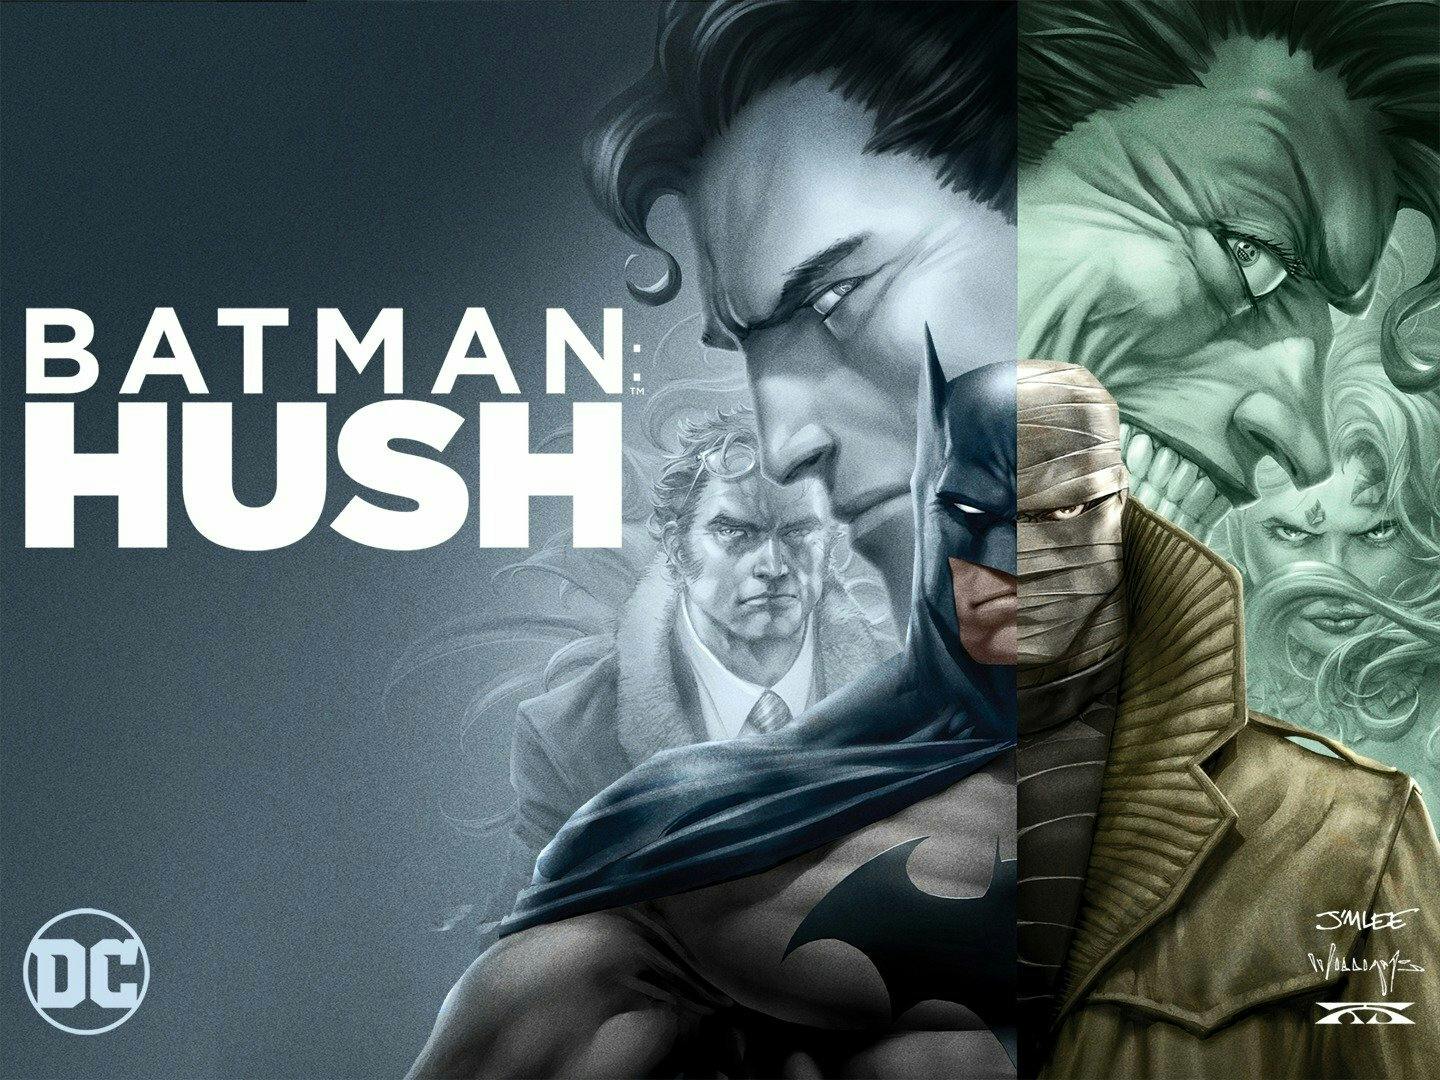 Batman: Hush Image